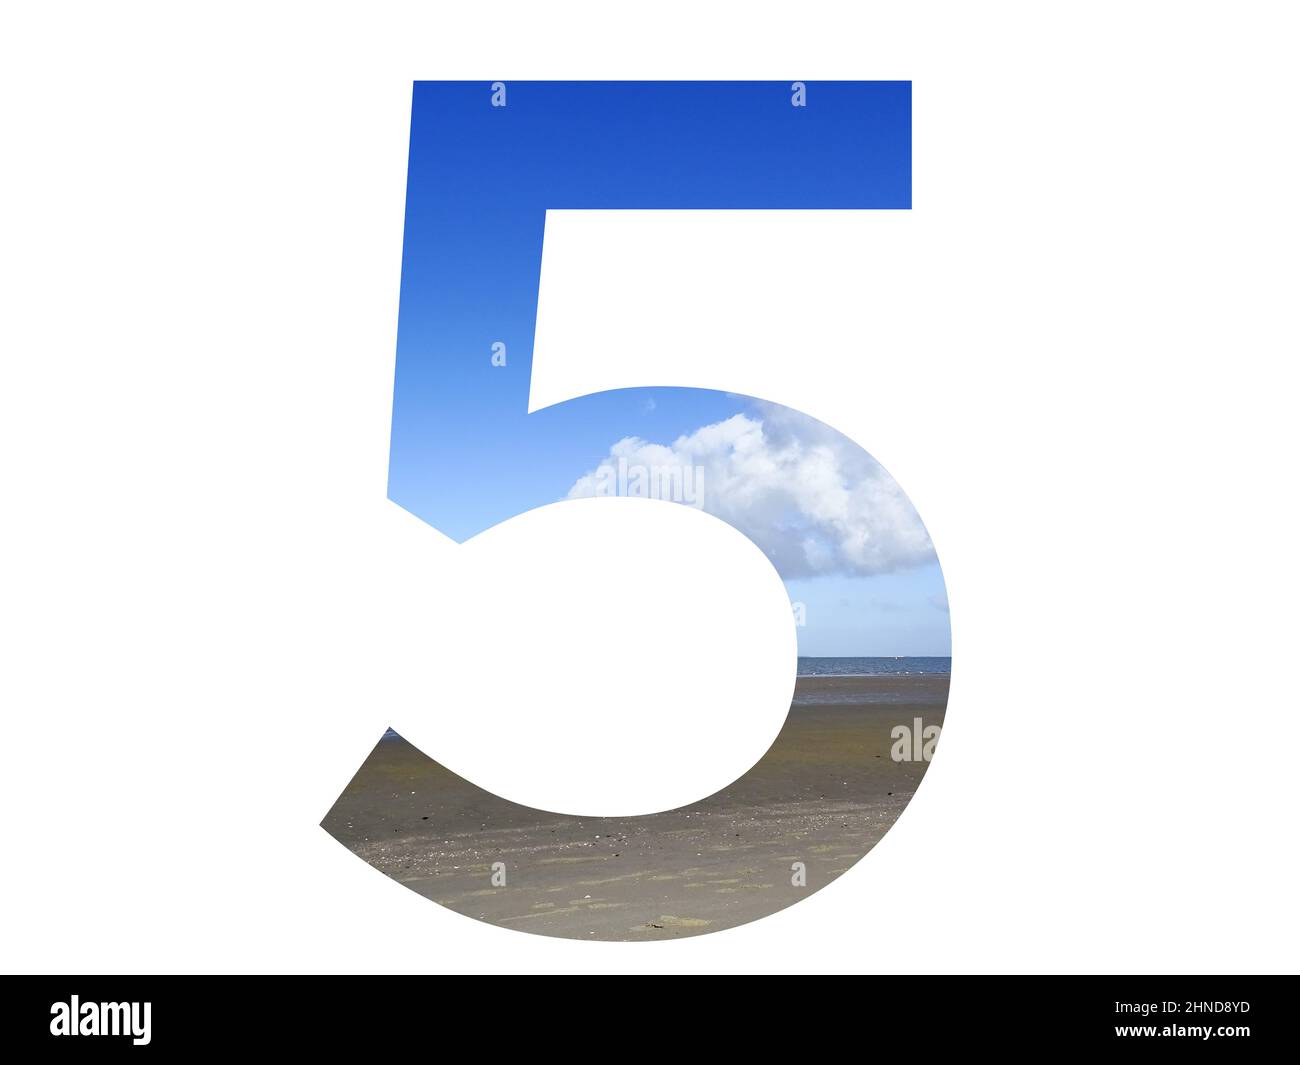 Numéro 5 de l'alphabet avec plage, mer et ciel bleu, mer du nord, pays-Bas, isolé sur fond blanc Banque D'Images